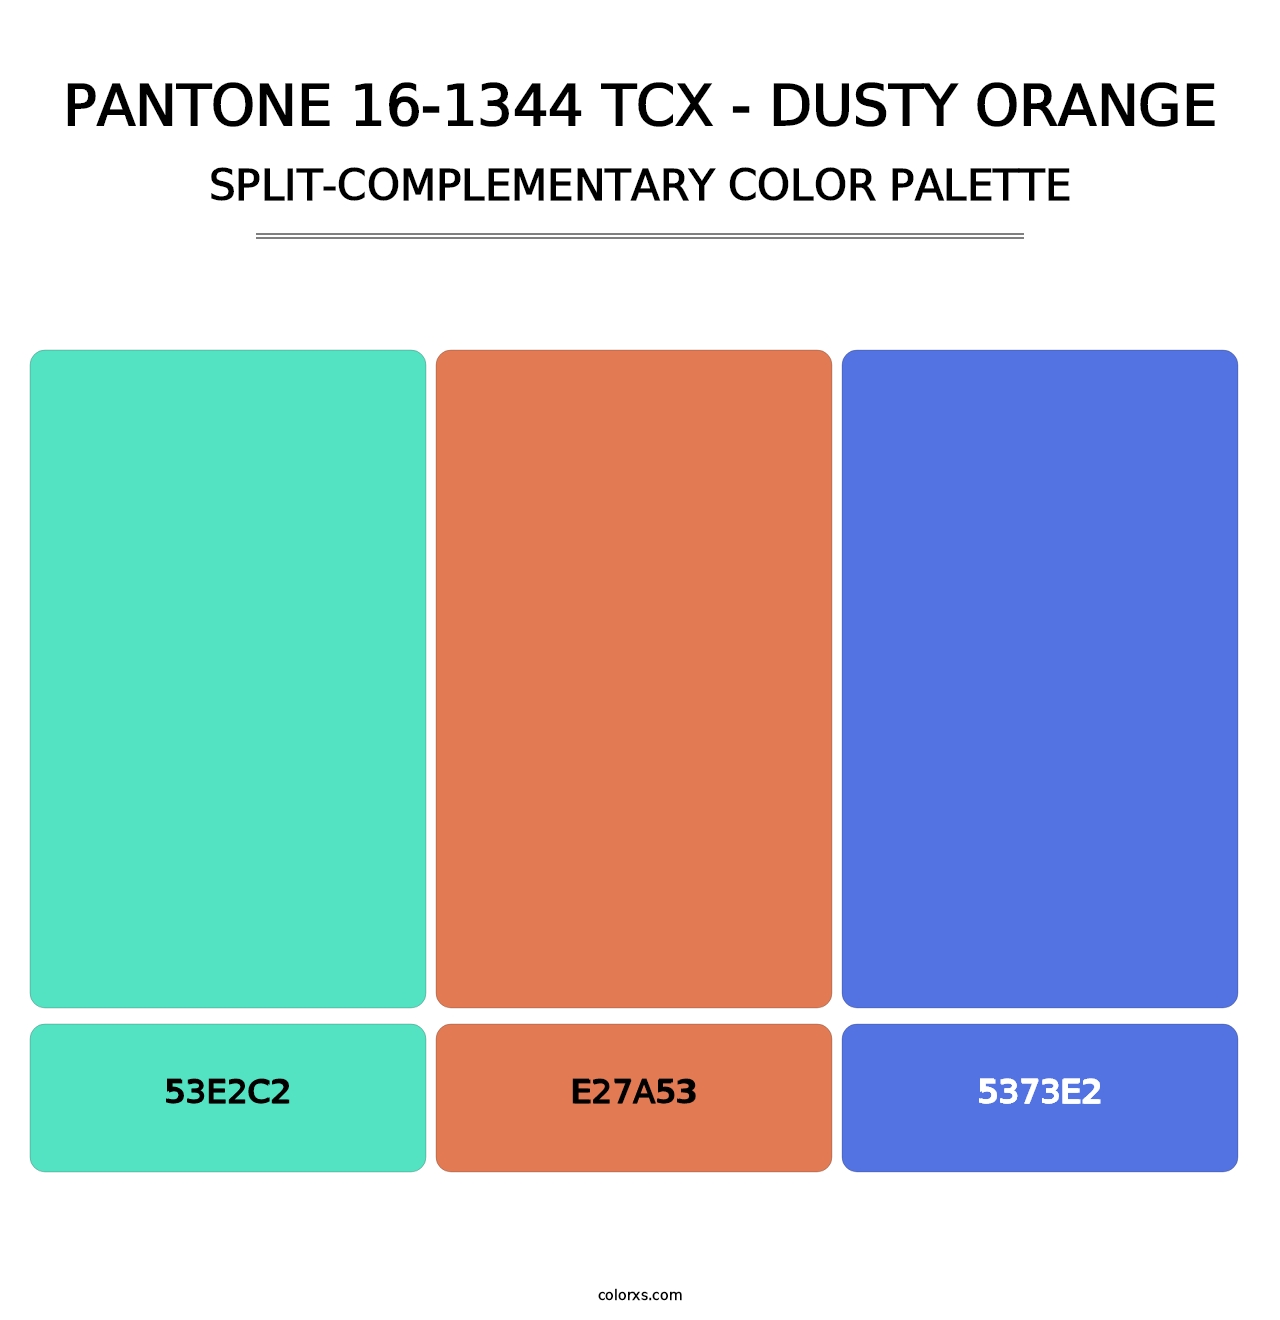 PANTONE 16-1344 TCX - Dusty Orange - Split-Complementary Color Palette